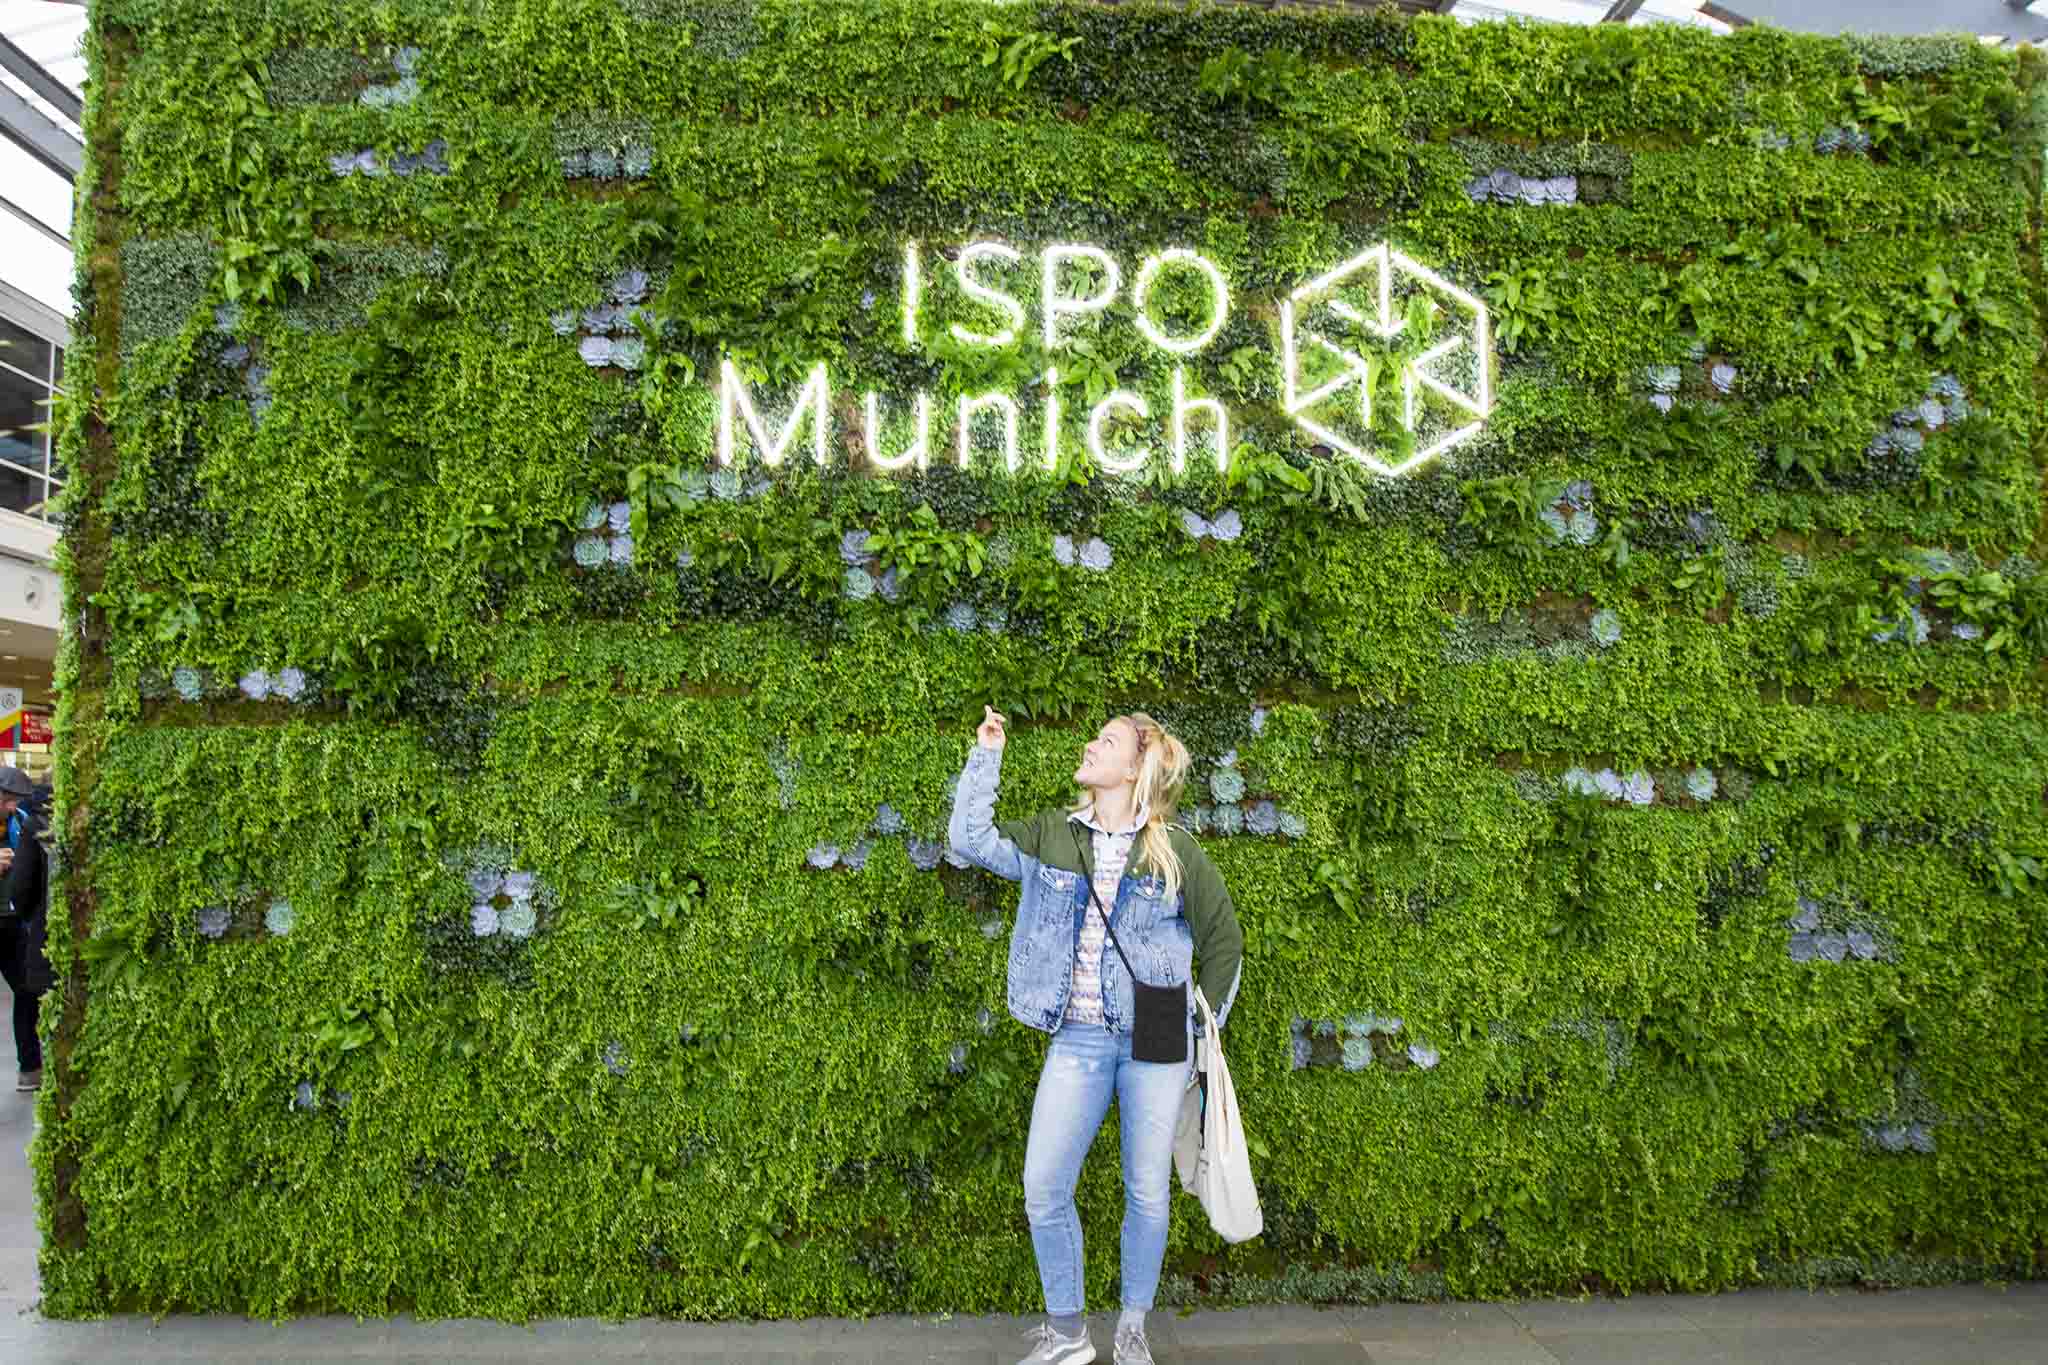 Ispo München Eingangshalle